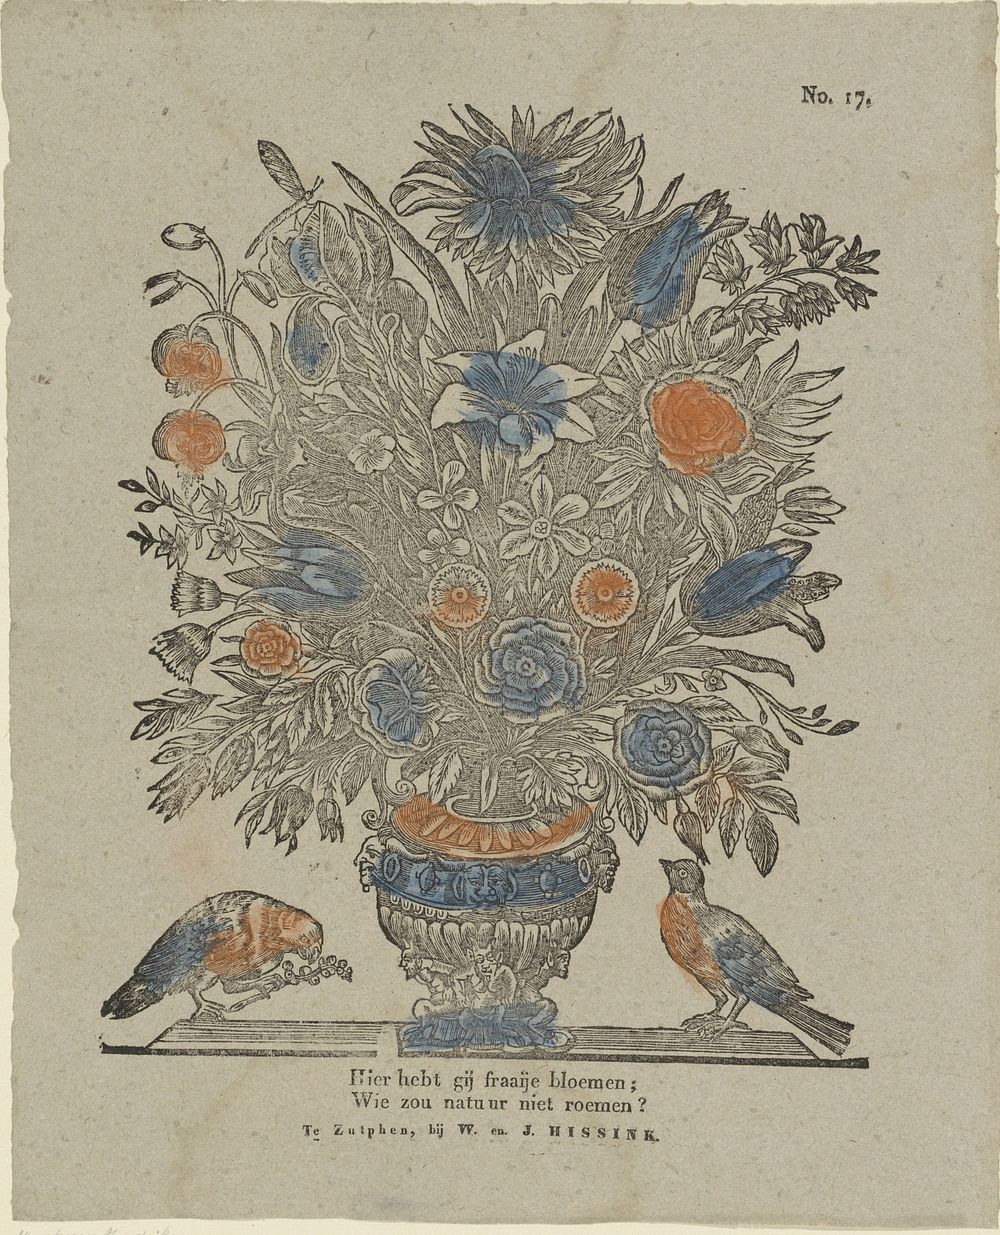 Hier hebt gij fraaije bloemen; / Wie zou natuur niet roemen? (1832 - 1850) by W  and J Hissink, Theodorus Johannes Wijnhoven…